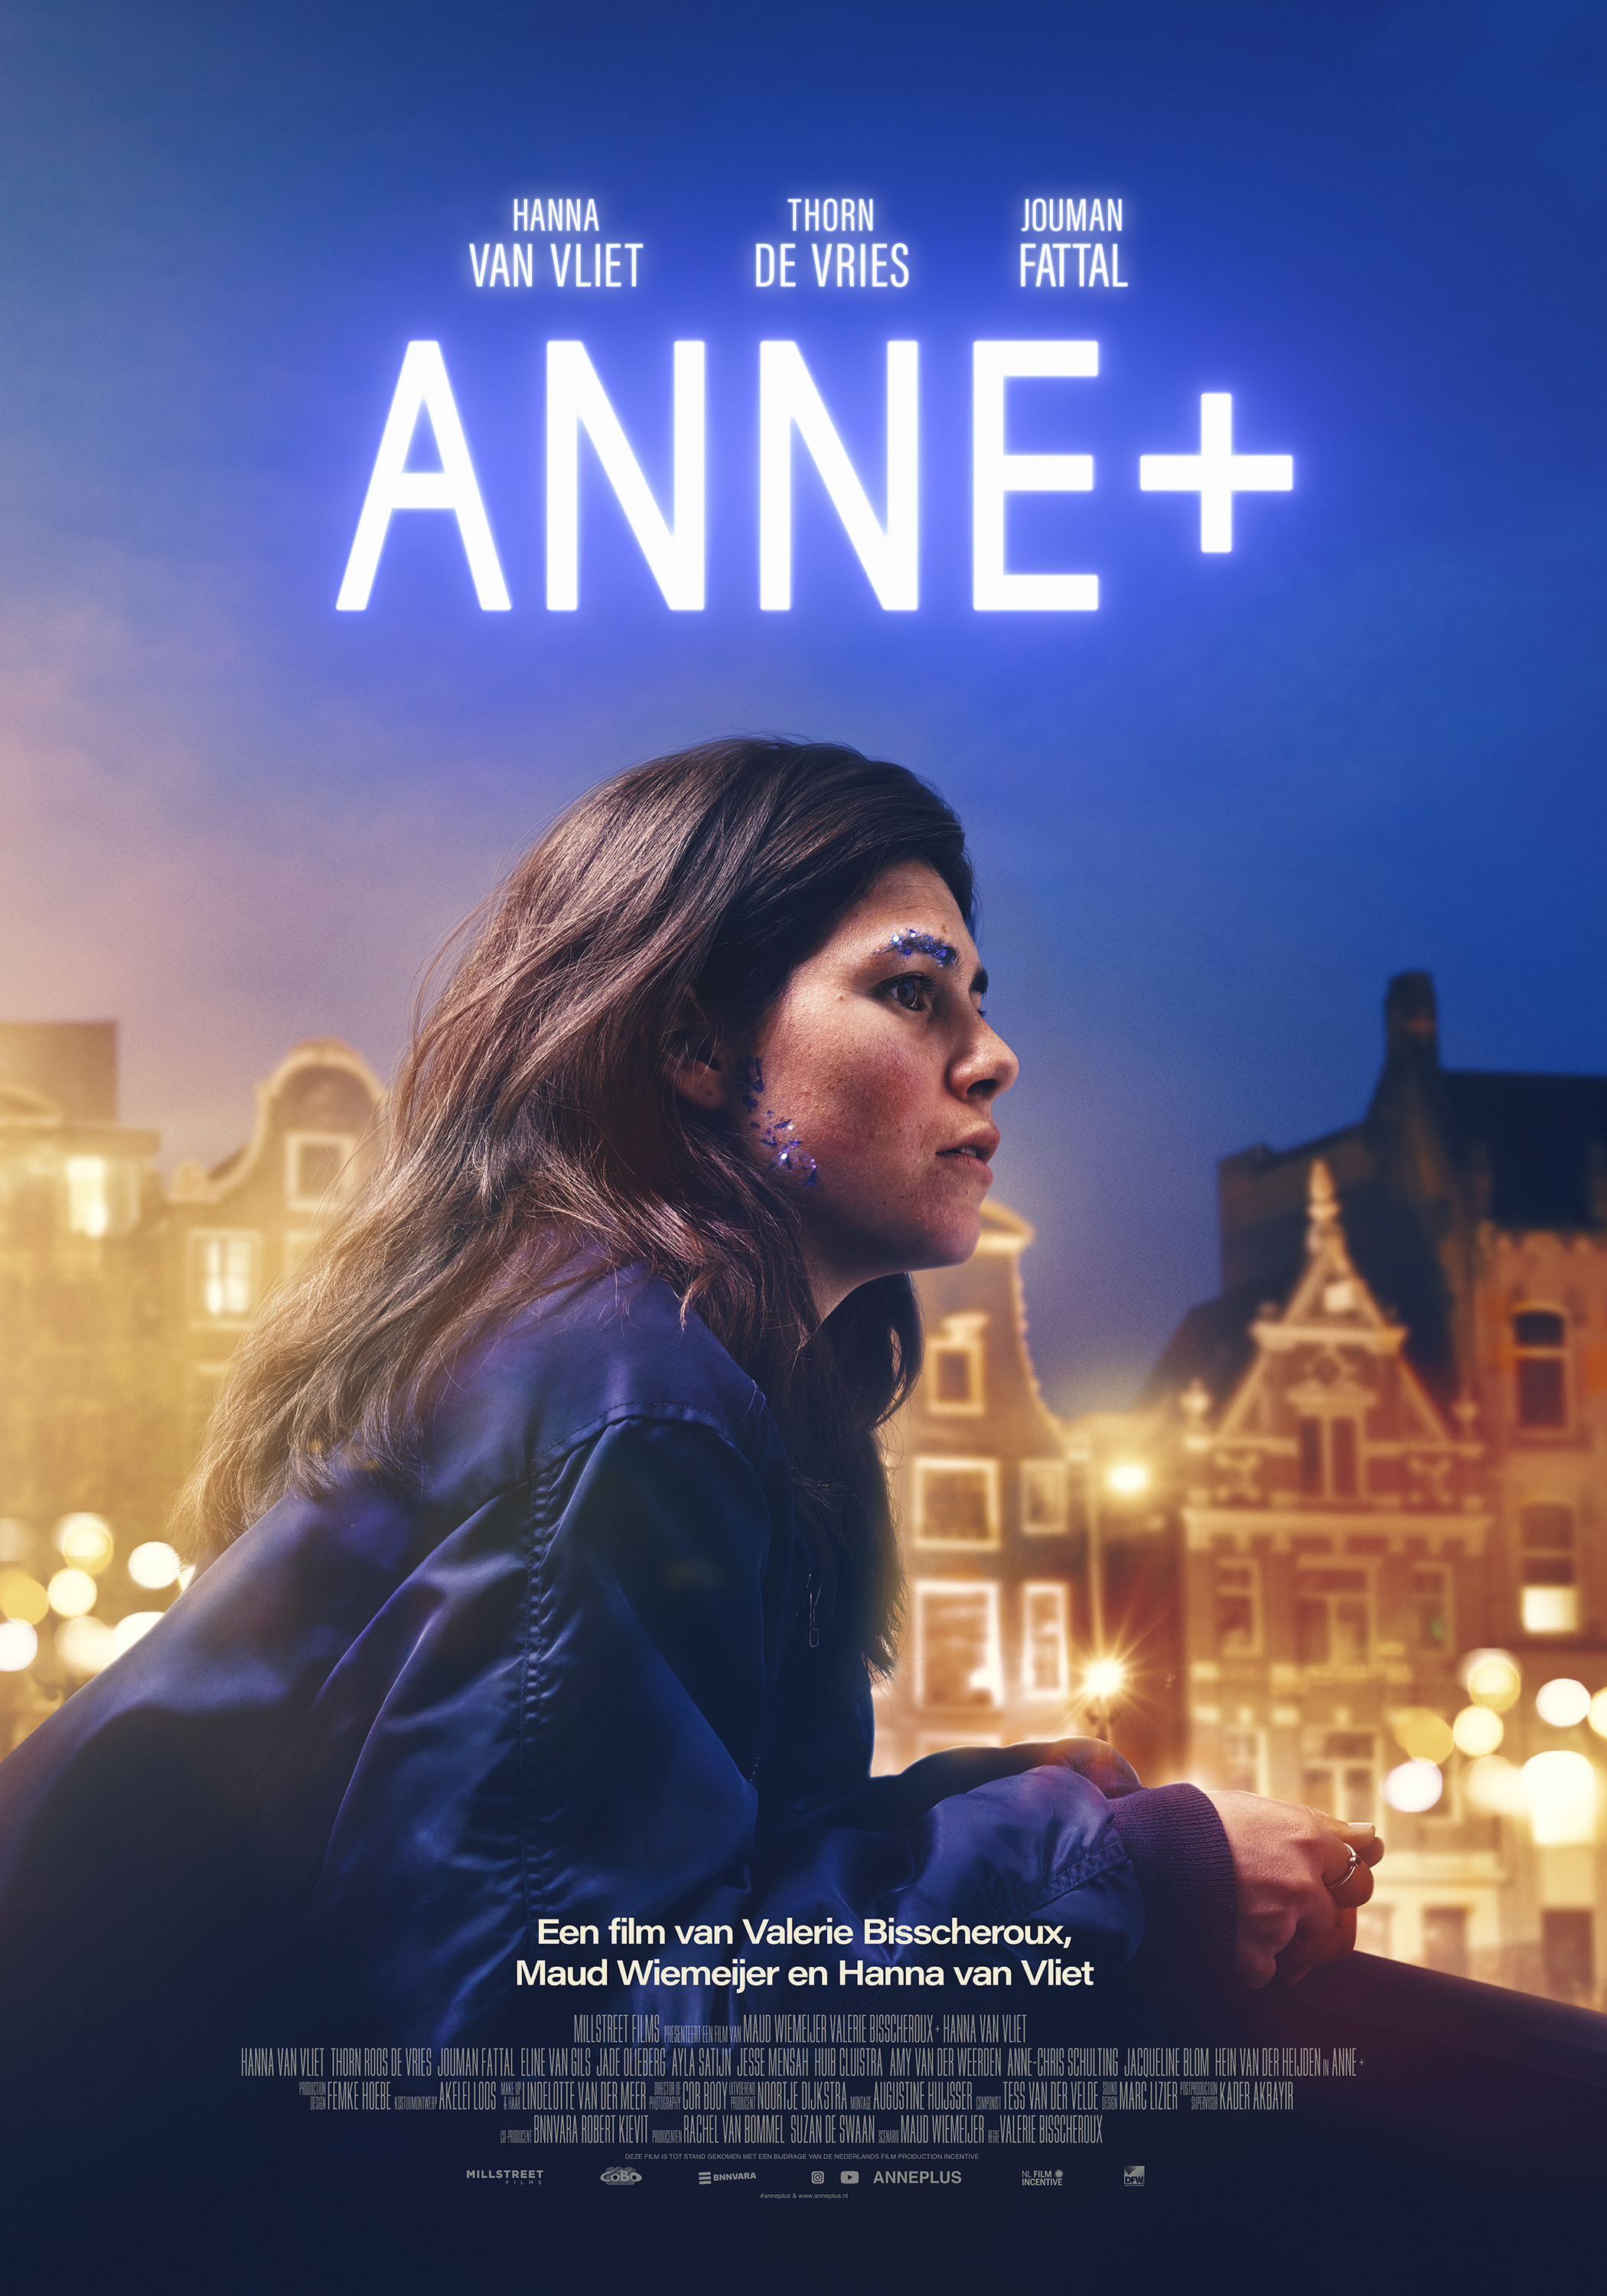 Het is 's nachts in Amsterdam. Anne leunt op de rand van een brug. Ze kijkt met gefronst voorhoord wat somber voor zich uit. Ze geeft blauwe glitters op haar wenkbrauwen en bij haar oren. Die zijn nog van een dragking workshop.